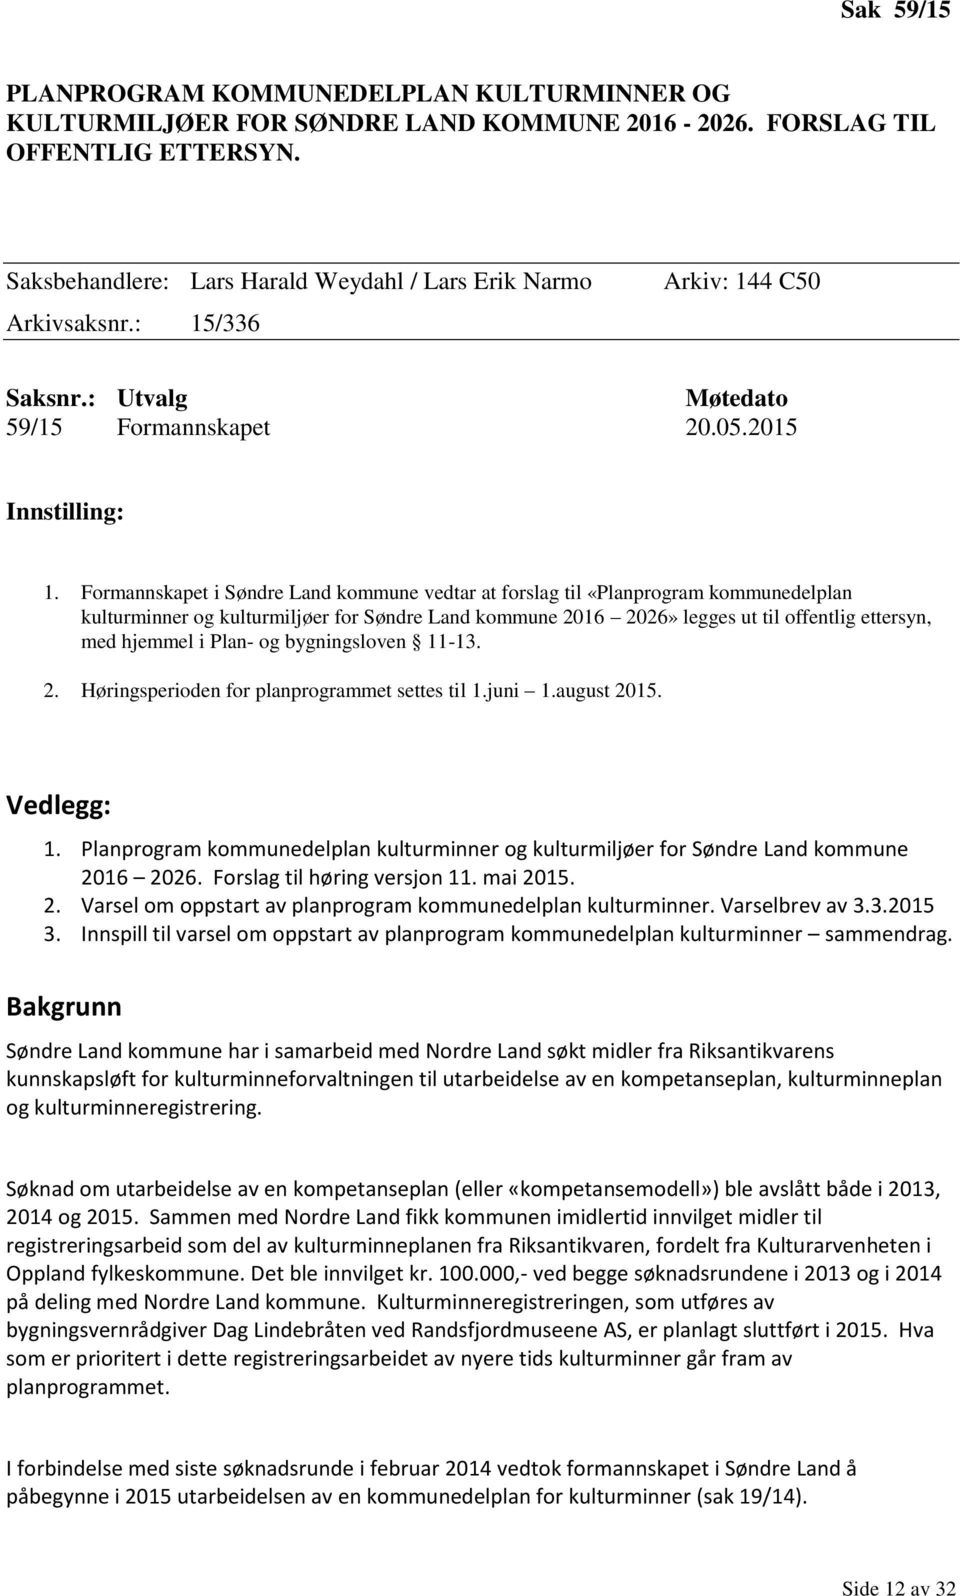 Formannskapet i Søndre Land kommune vedtar at forslag til «Planprogram kommunedelplan kulturminner og kulturmiljøer for Søndre Land kommune 2016 2026» legges ut til offentlig ettersyn, med hjemmel i